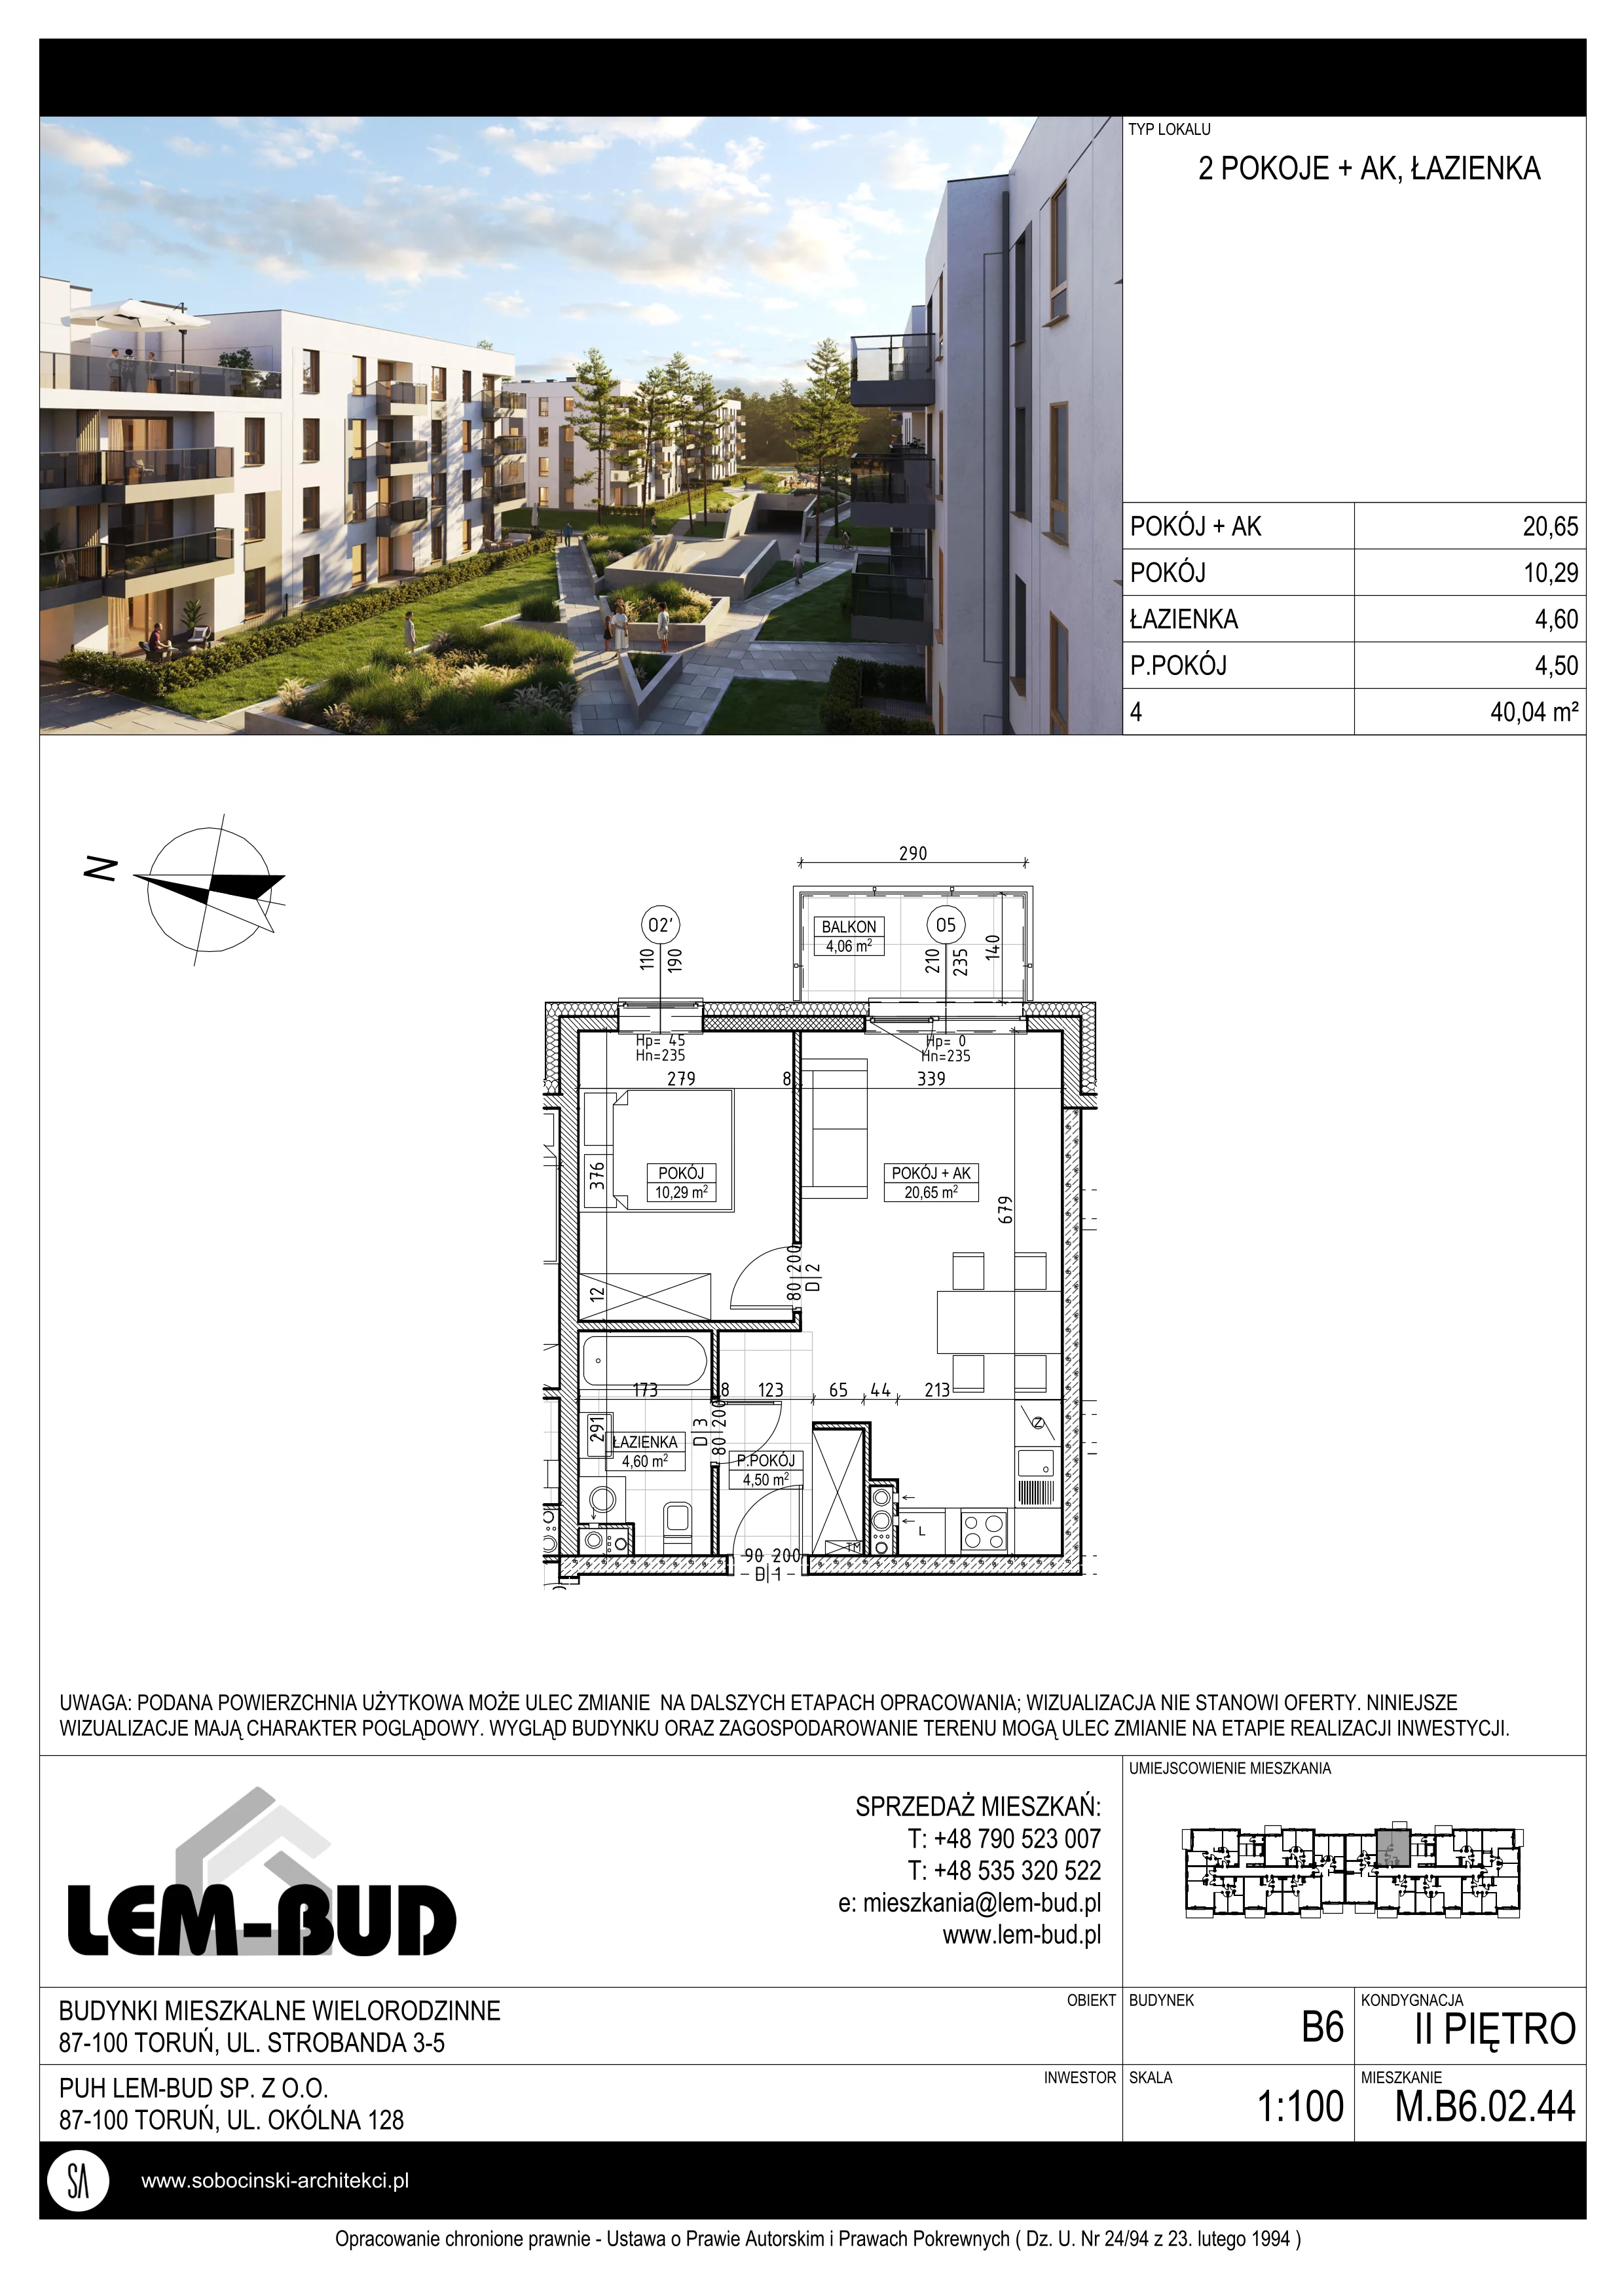 Mieszkanie 40,04 m², piętro 2, oferta nr M.B6.02.44, Osiedle Harmonia, Toruń, Wrzosy, JAR, ul. Strobanda 3-5